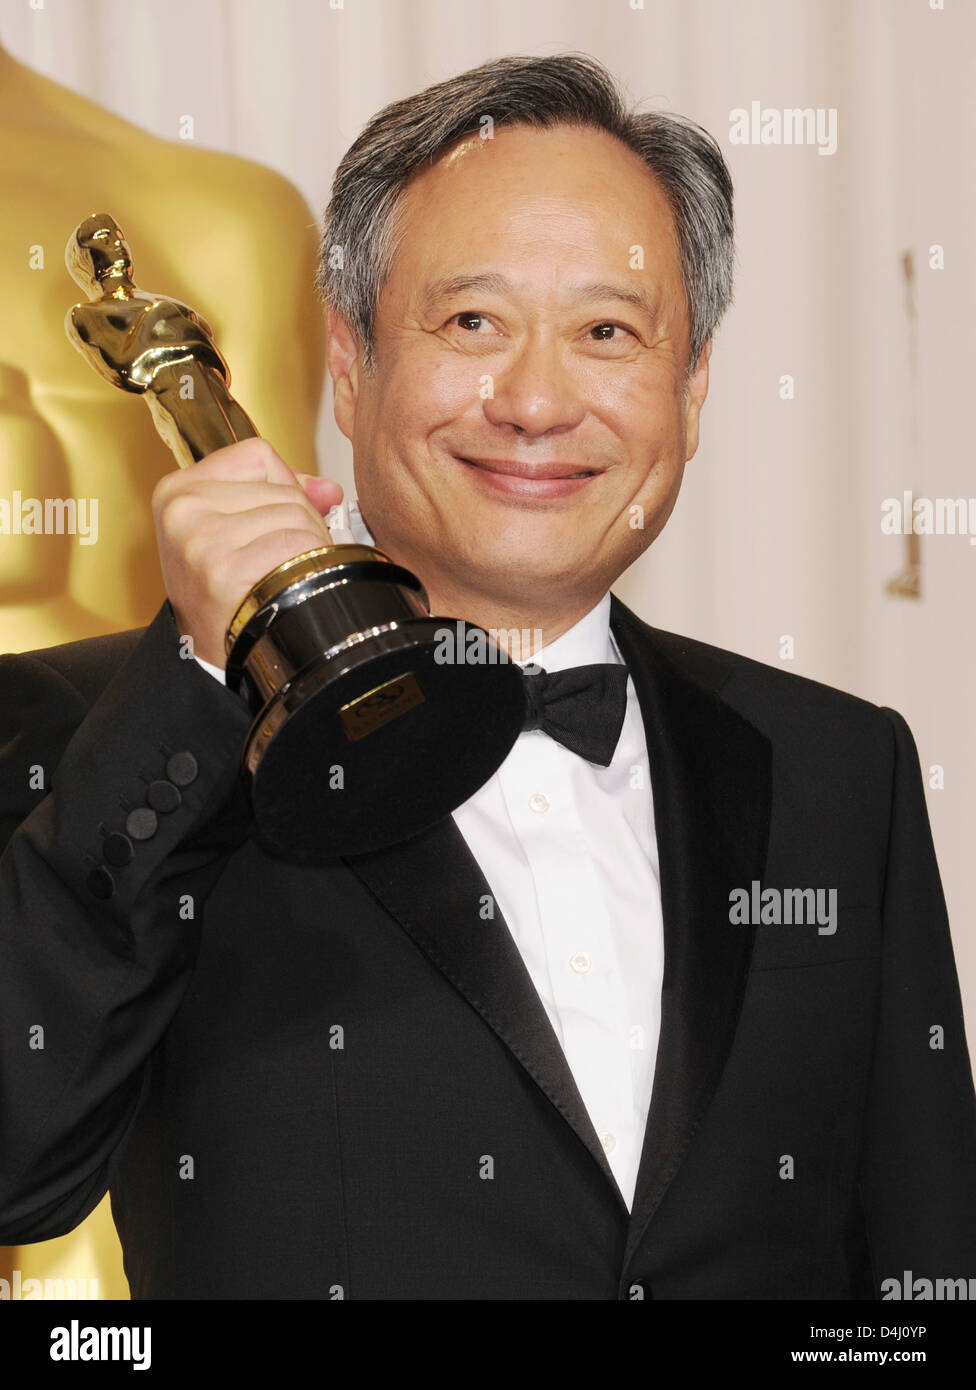 Taiwanés Ang Lee- productor de cine americano con el Oscar al Mejor Director de la vida de PI en febrero de 2013. Foto Jeffrey Mayer Foto de stock